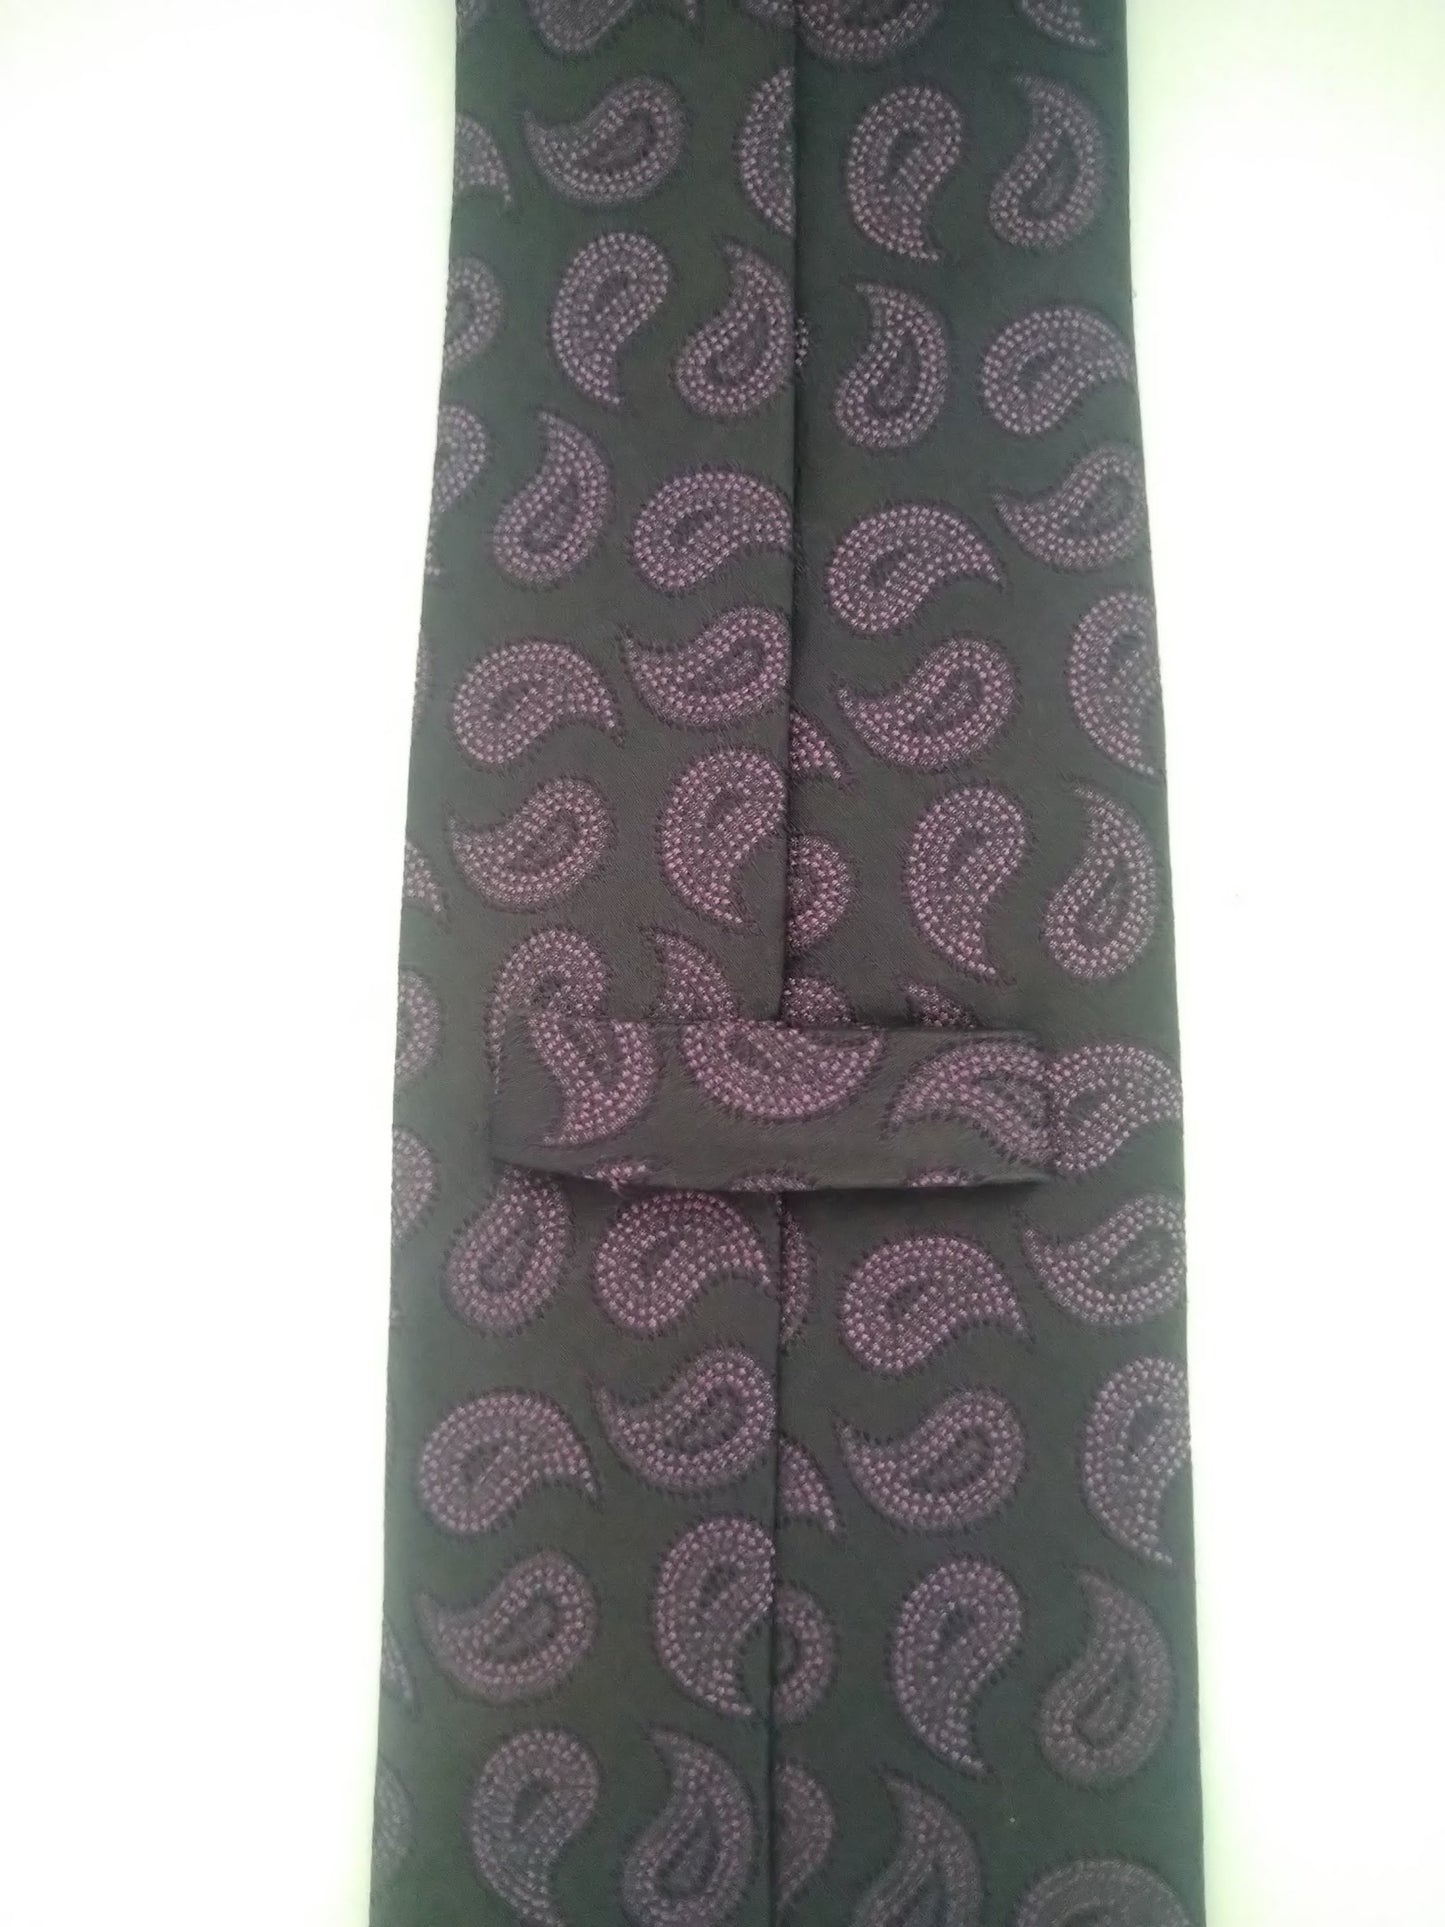 Cravatta vintage Motivo nero viola. Seta